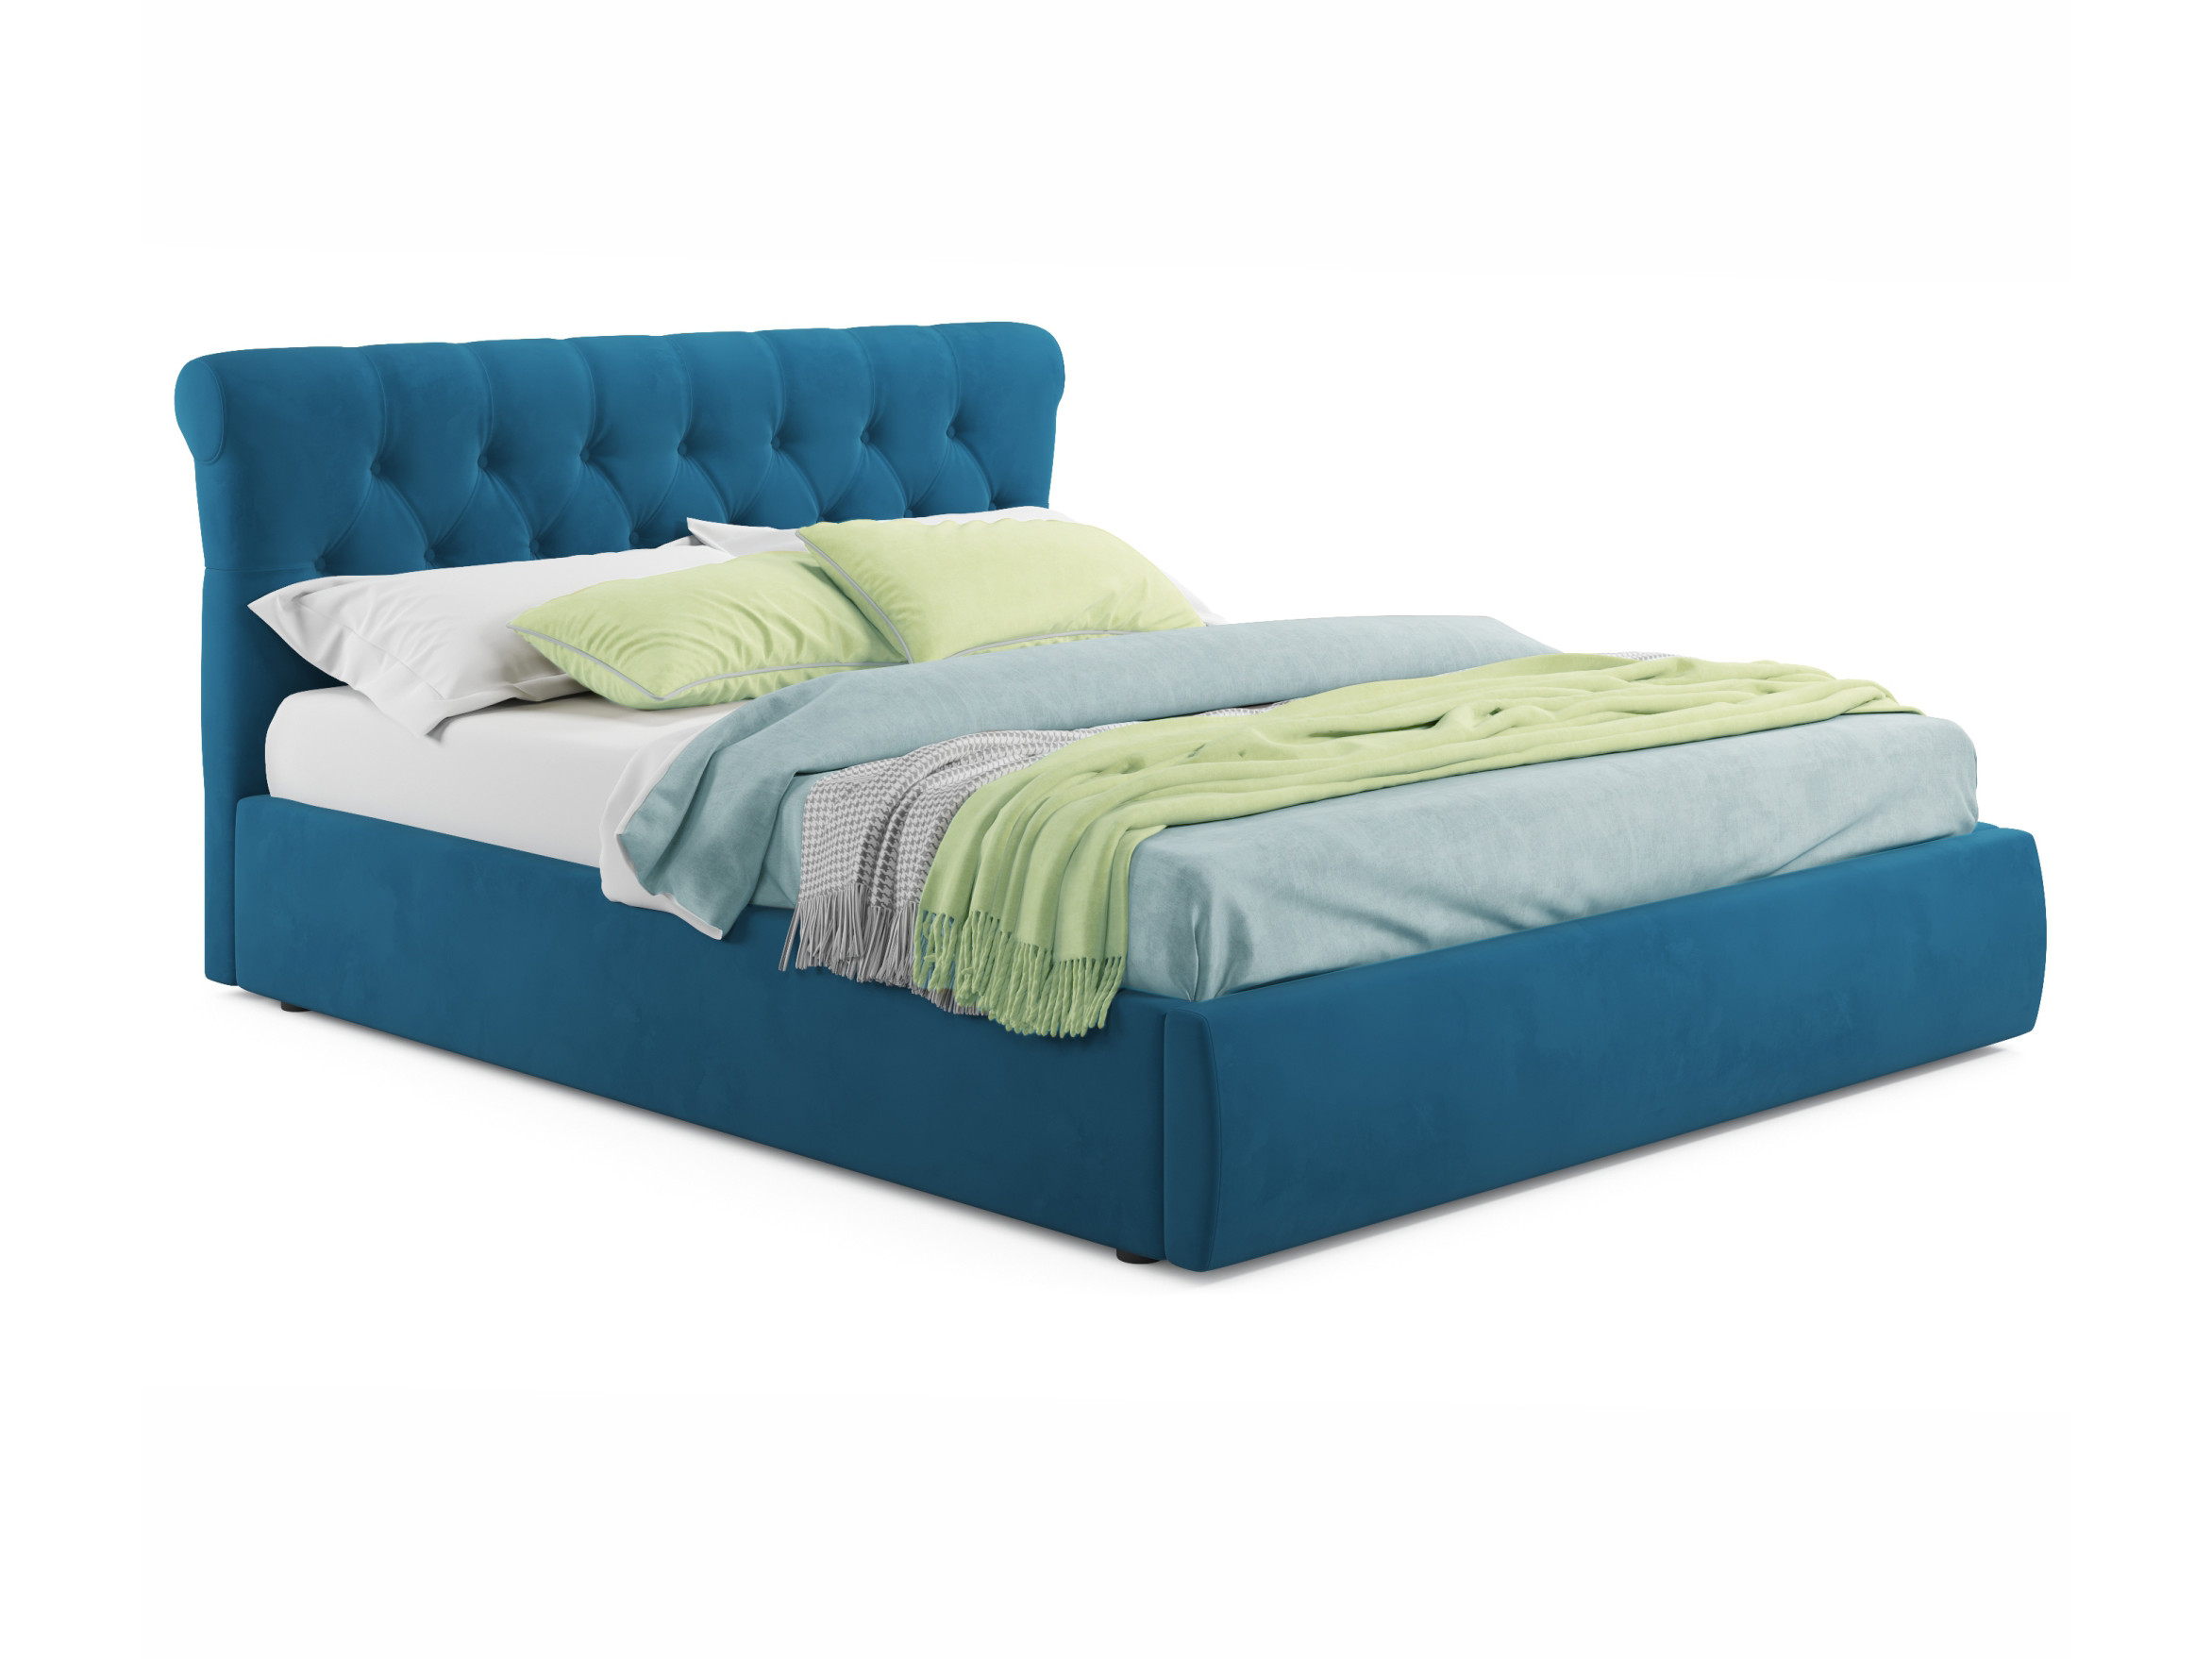 мягкая кровать ameli 1400 синяя с подъемным механизмом синий синий велюр дсп Мягкая кровать Ameli 1600 синяя с подъемным механизмом синий, Синий, Велюр, ДСП